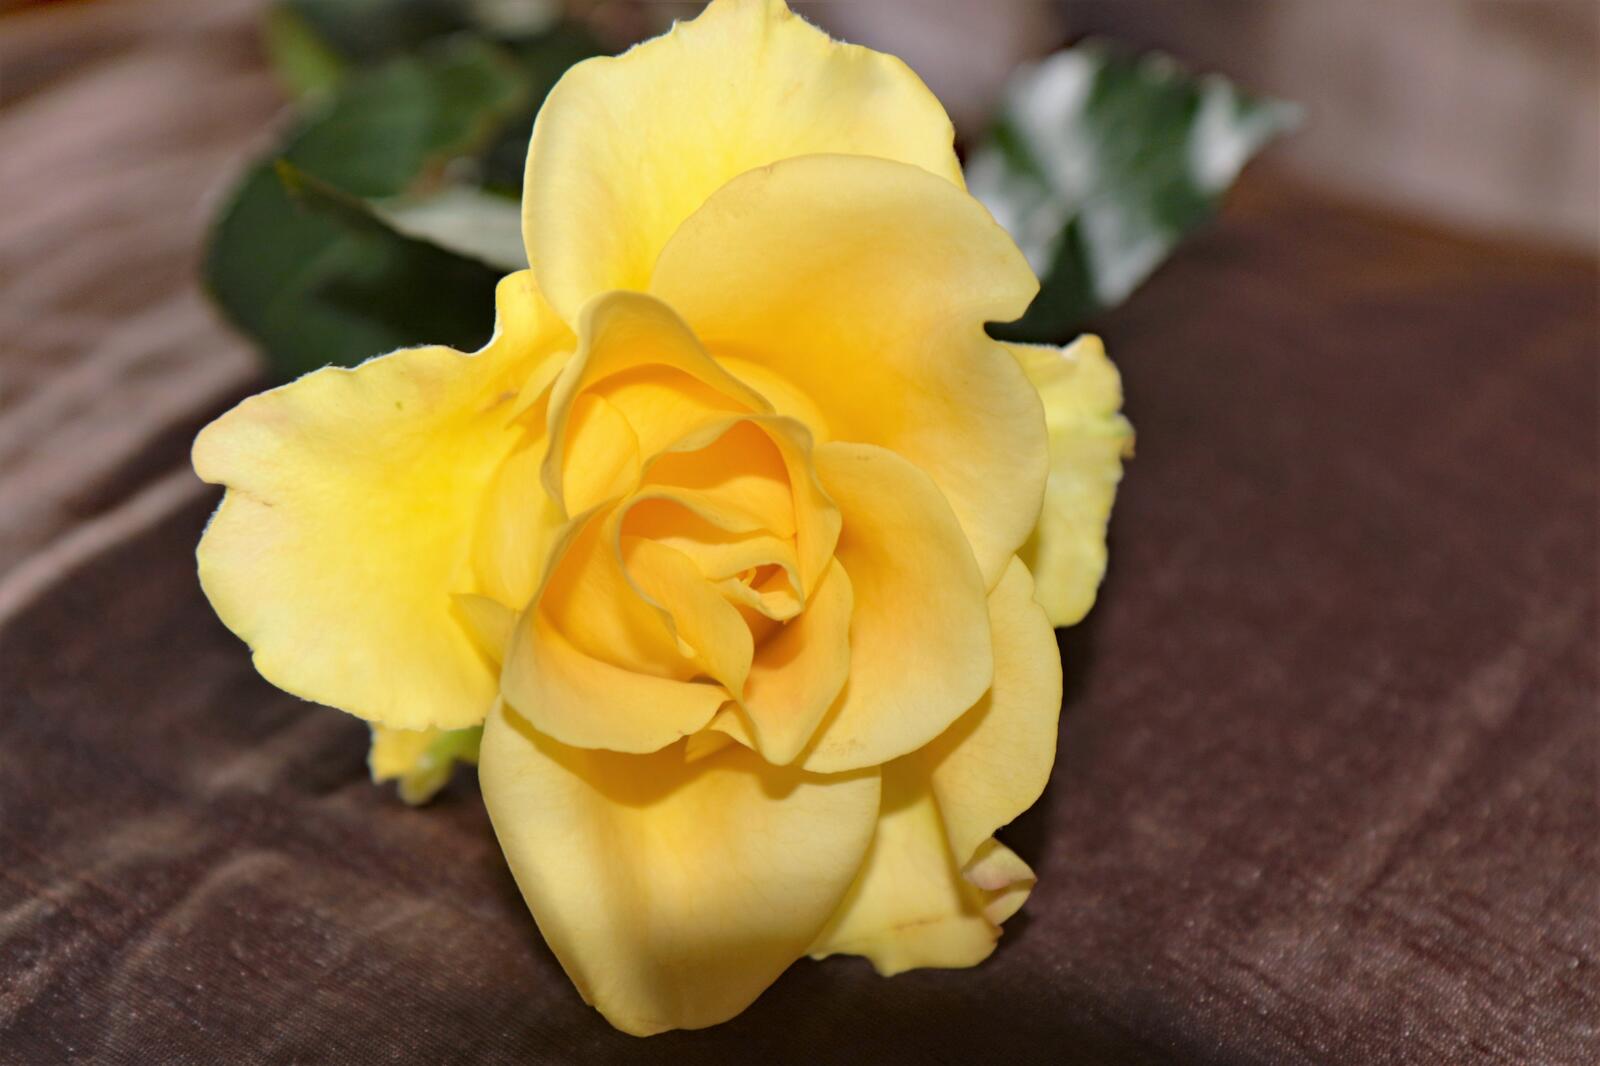 免费照片壁纸 孤独的黄玫瑰